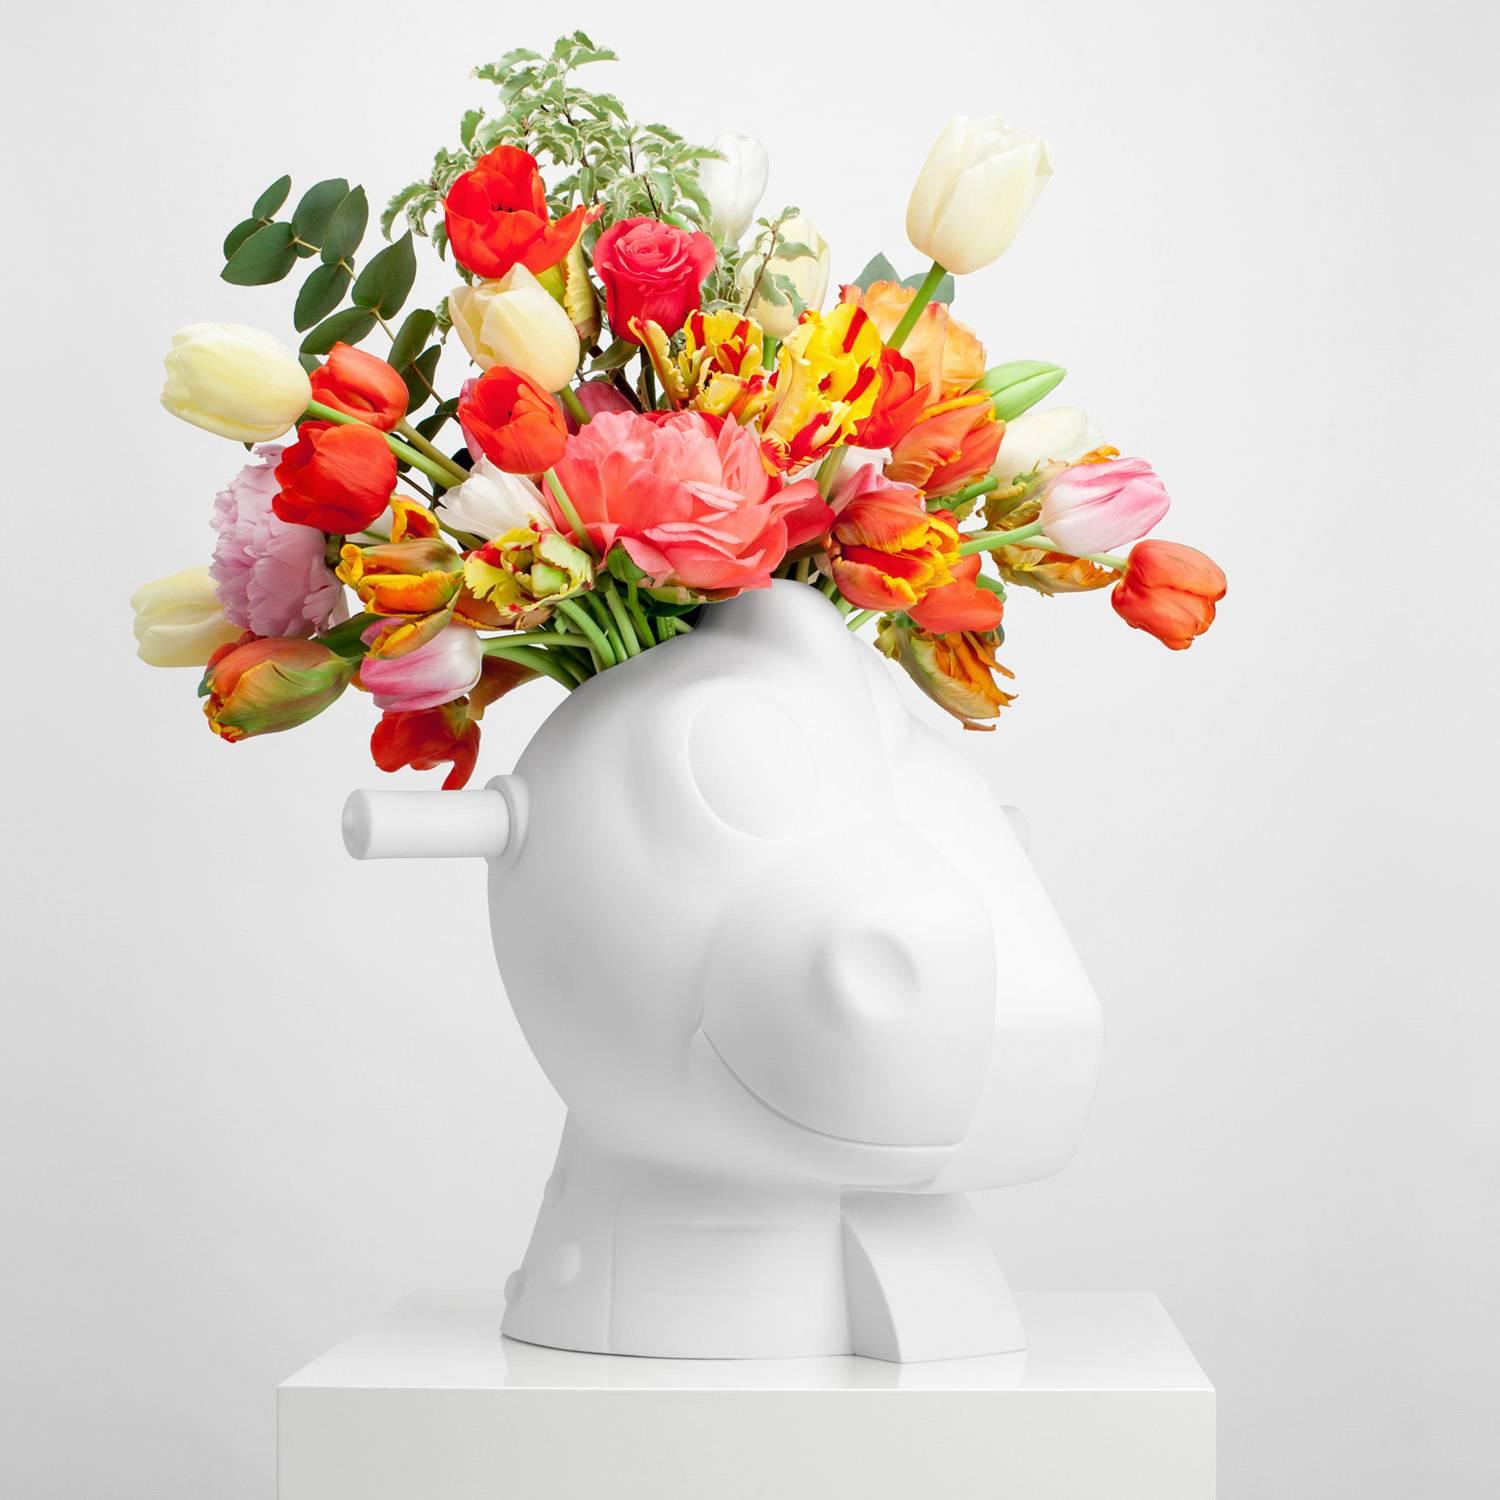 Split-Rocker Vase  - Sculpture by Jeff Koons